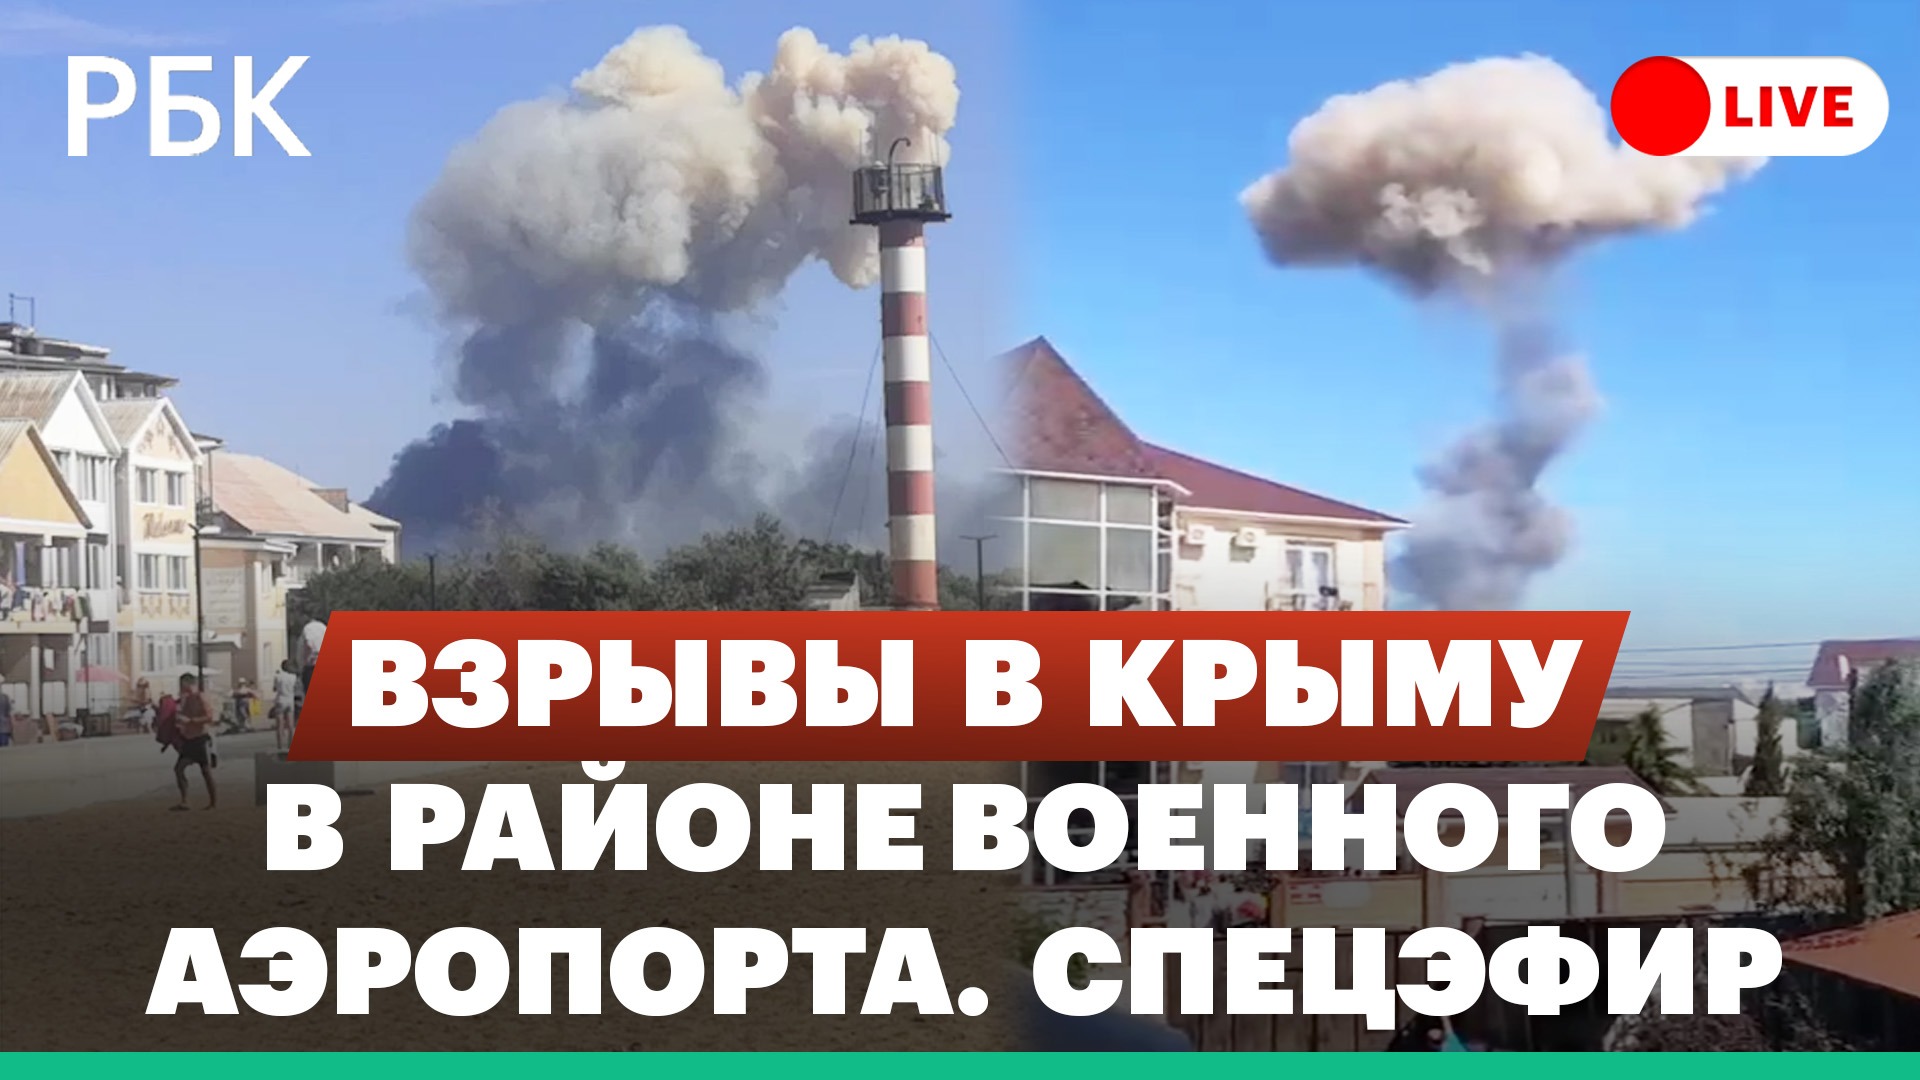 Взрывы в районе военного аэродрома в Крыму. Спецэфир. Прямая трансляция